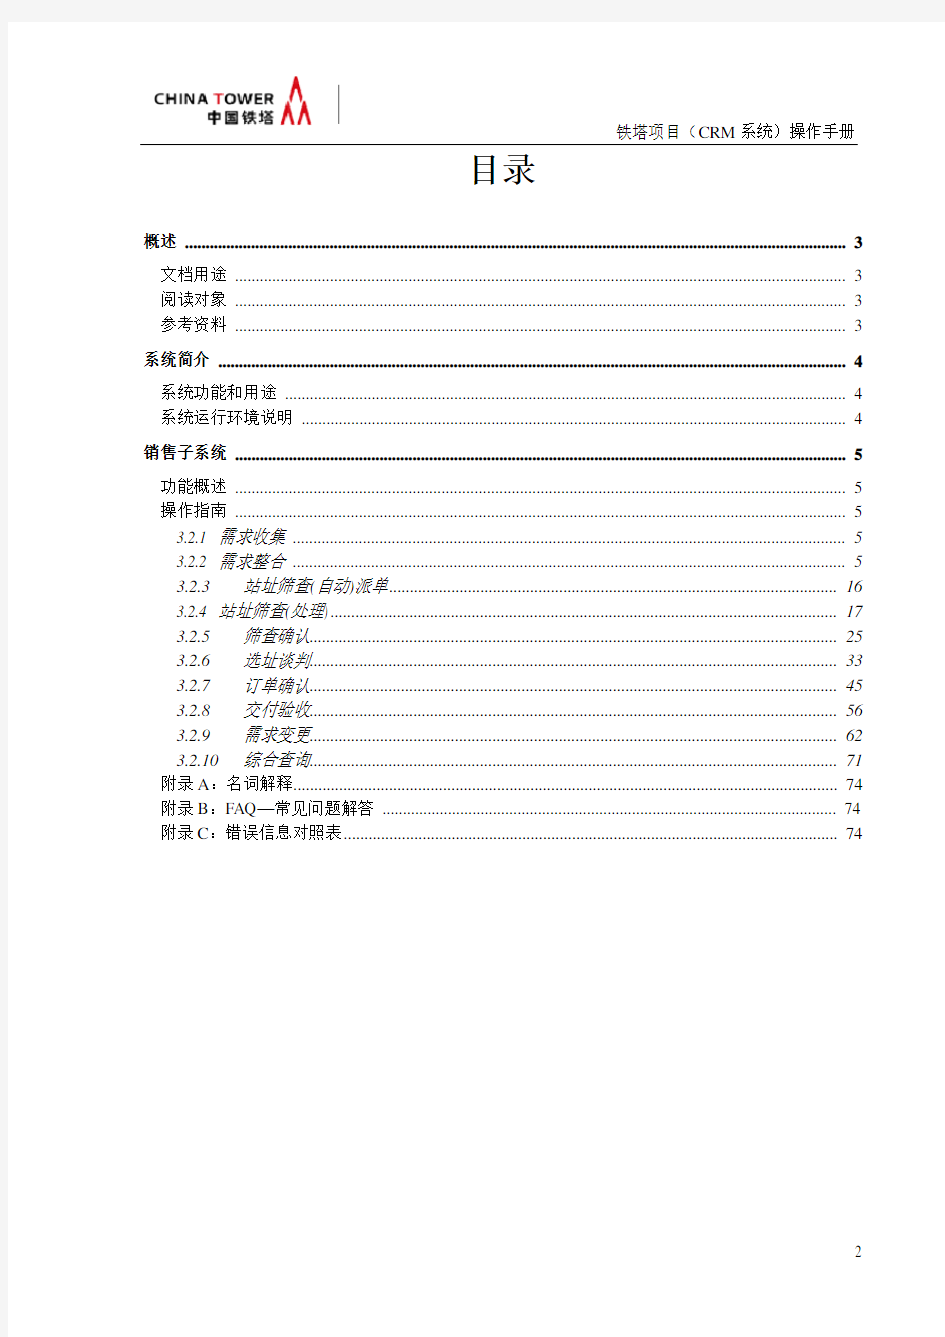 中国铁塔项目(CRM系统)操作手册(前台)